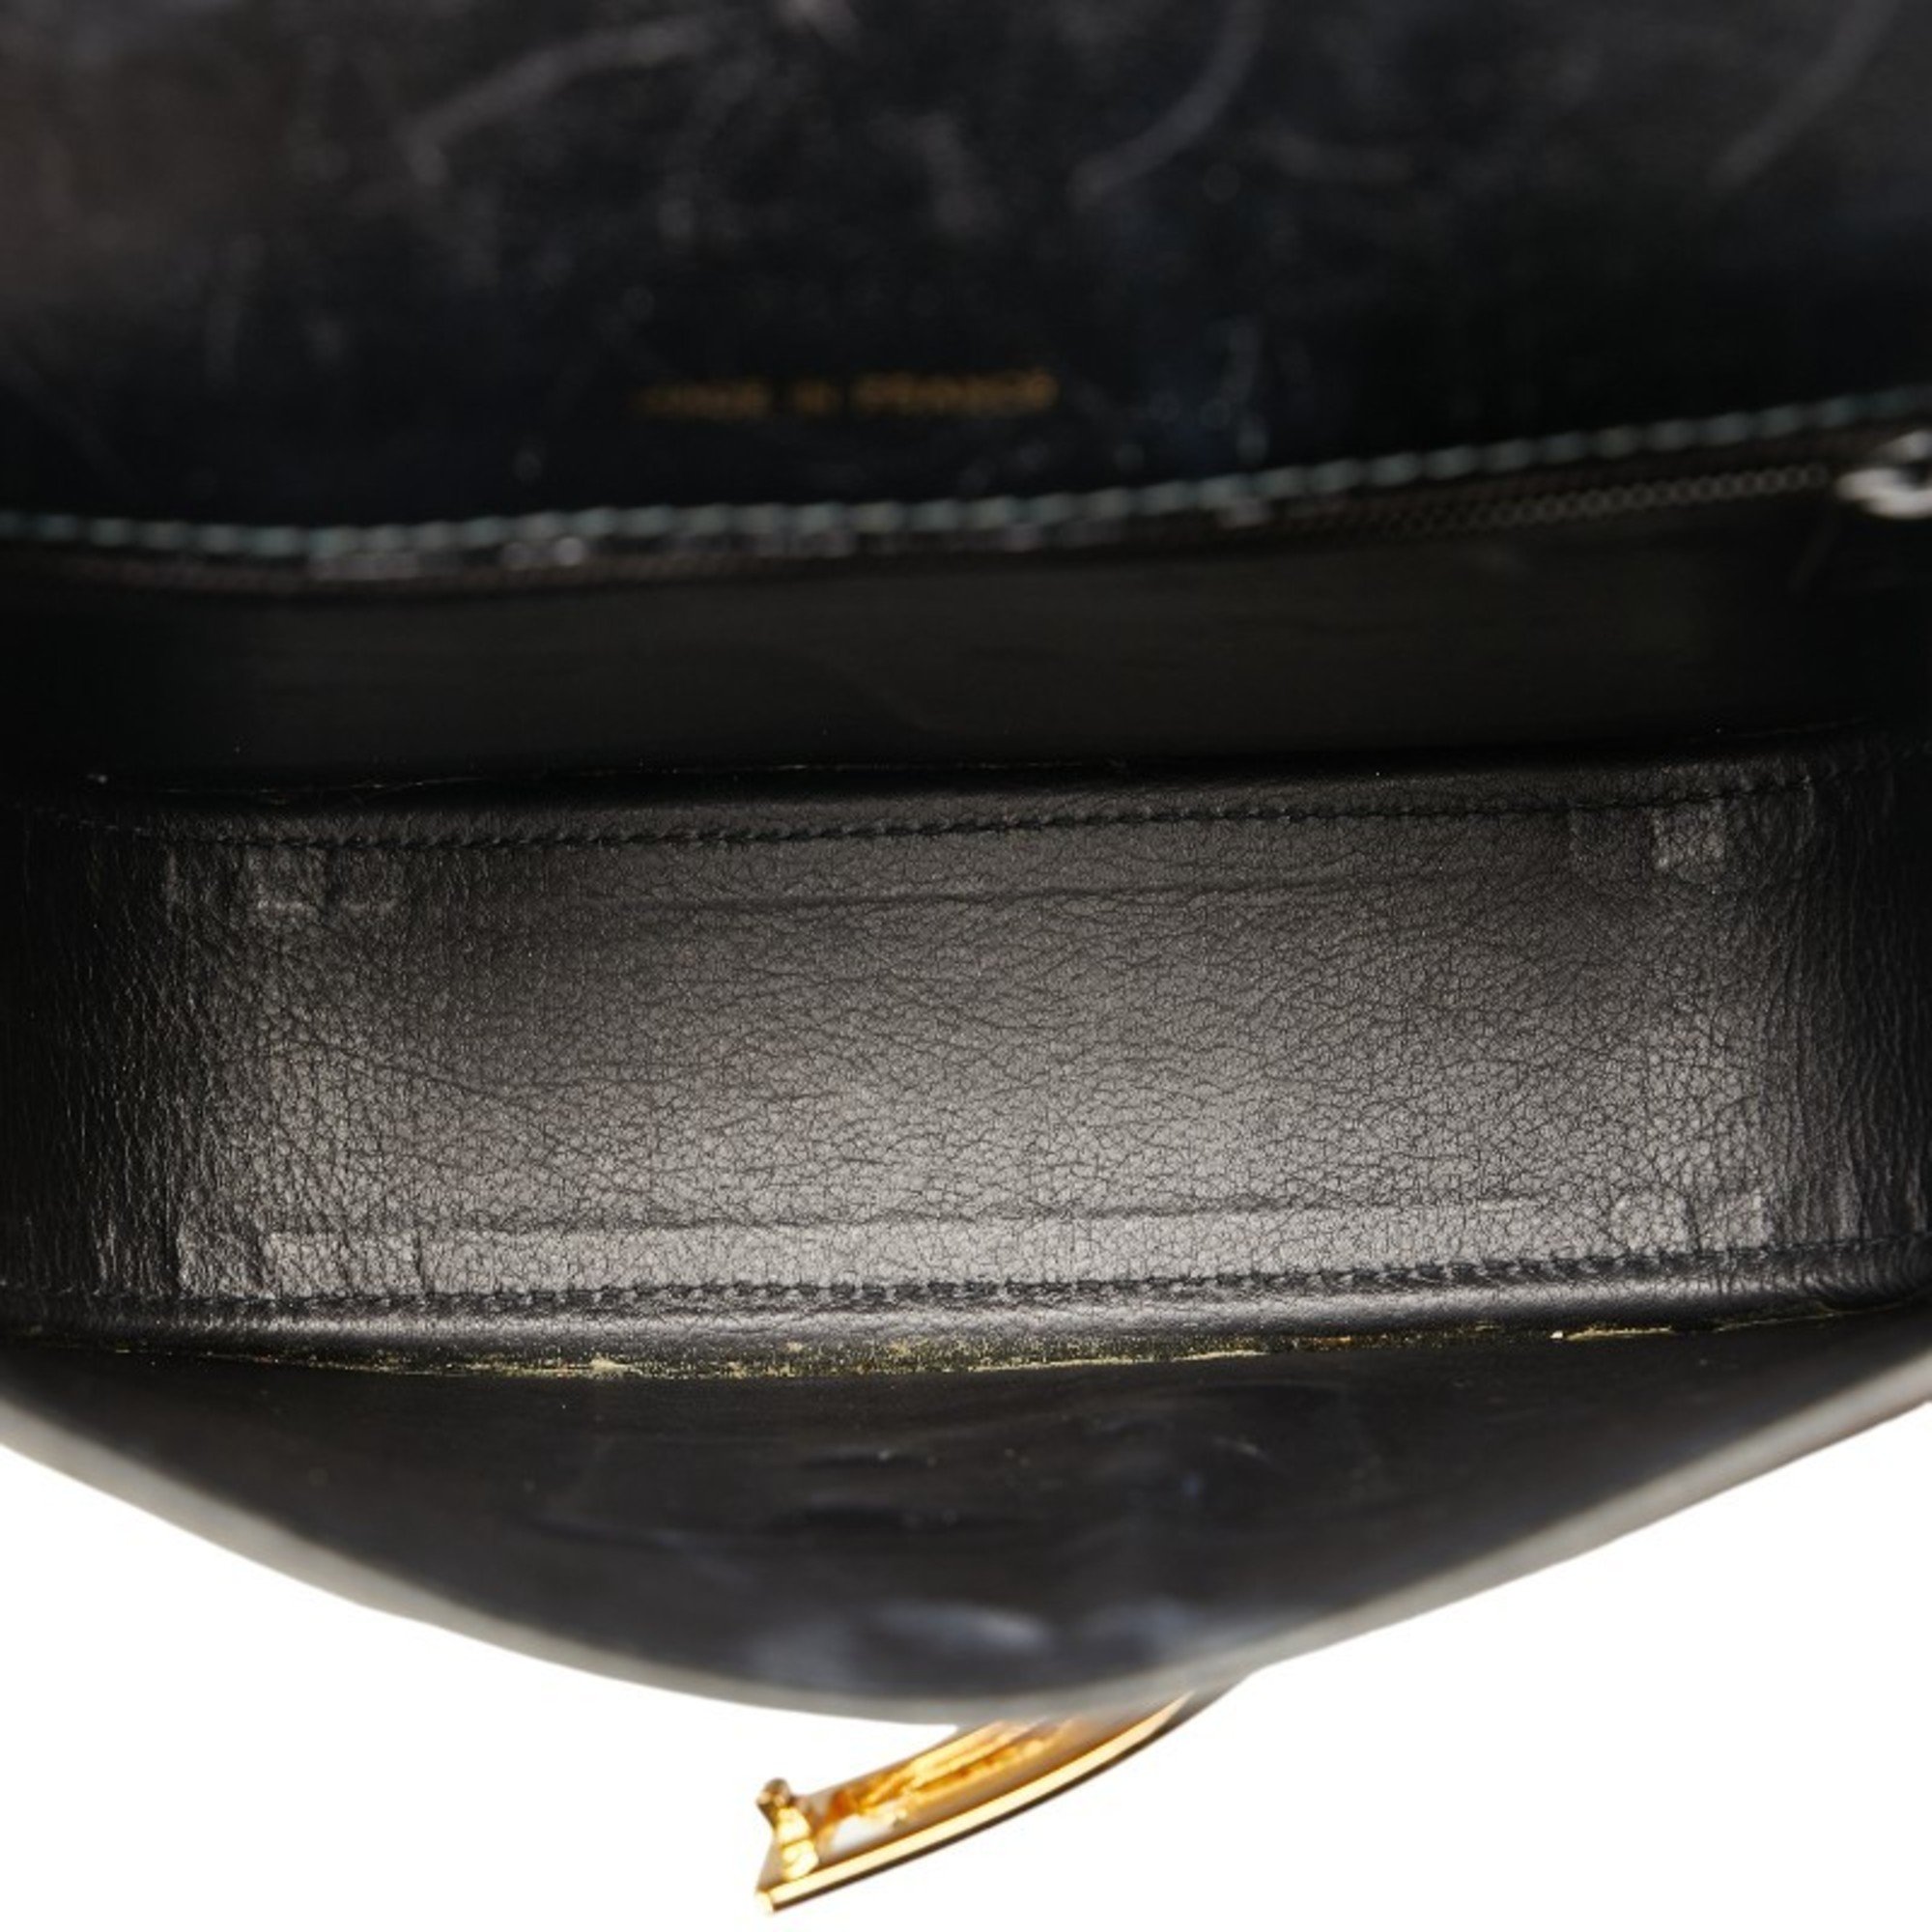 CELINE Carriage hardware shoulder bag black leather women's